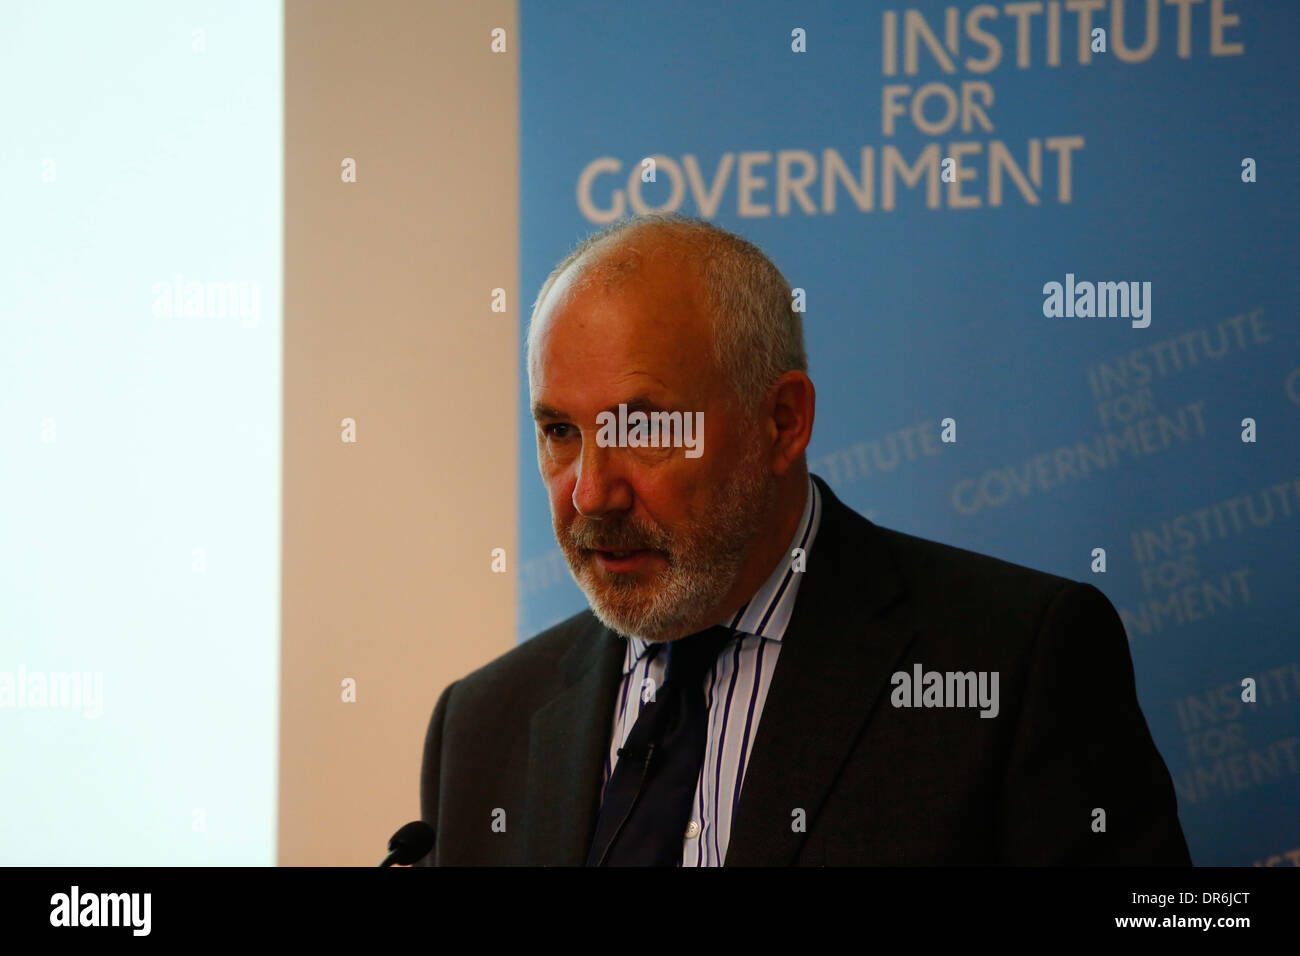 Arbeitsrechtlichen Schatten Cabinet Office Minister Jon Trickett hält eine Rede auf die Reform des öffentlichen Dienstes am Institut für Regierung, in Stockfoto